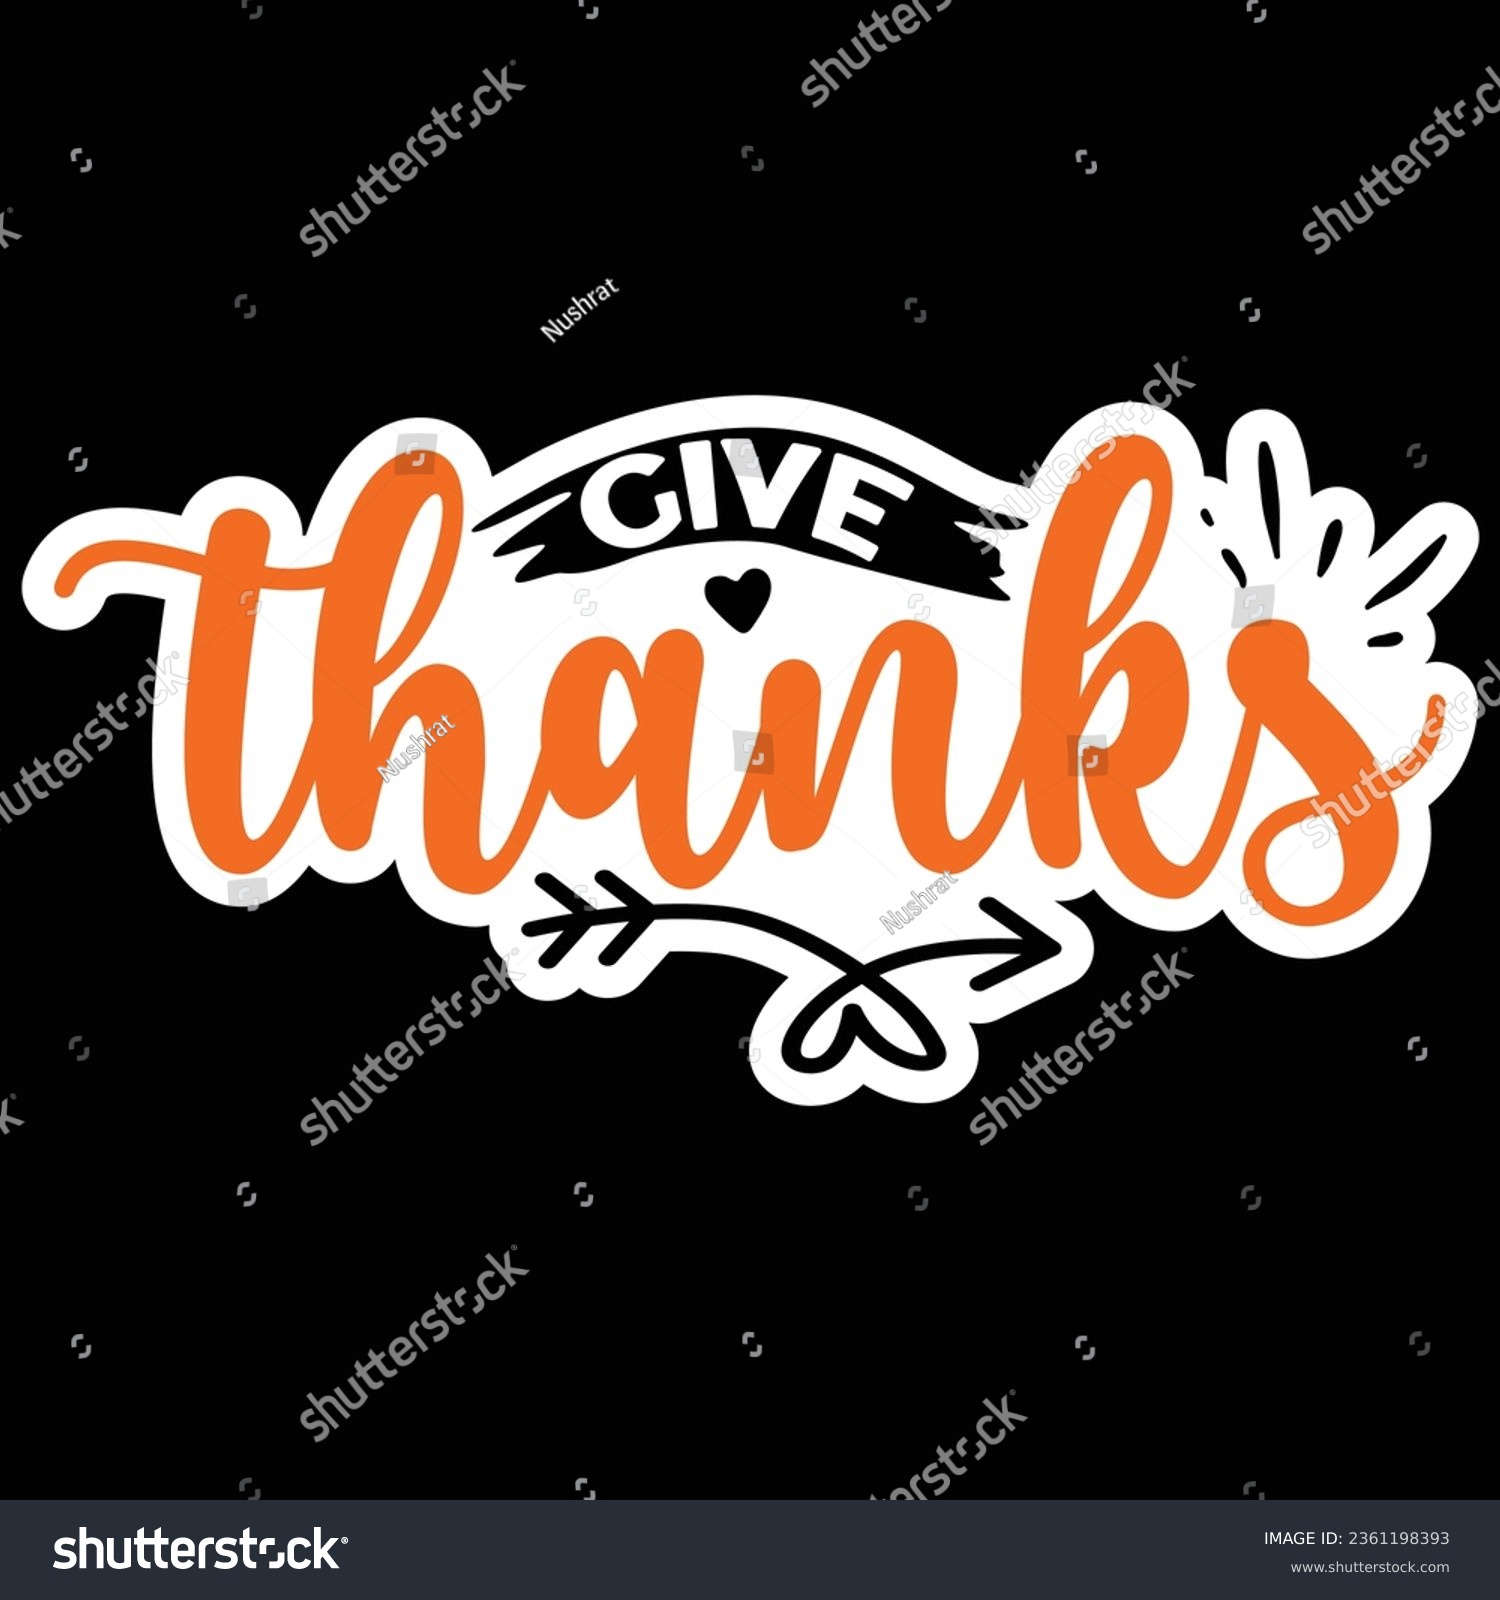 SVG of give thanks, Sticker SVG Design Vector file. svg